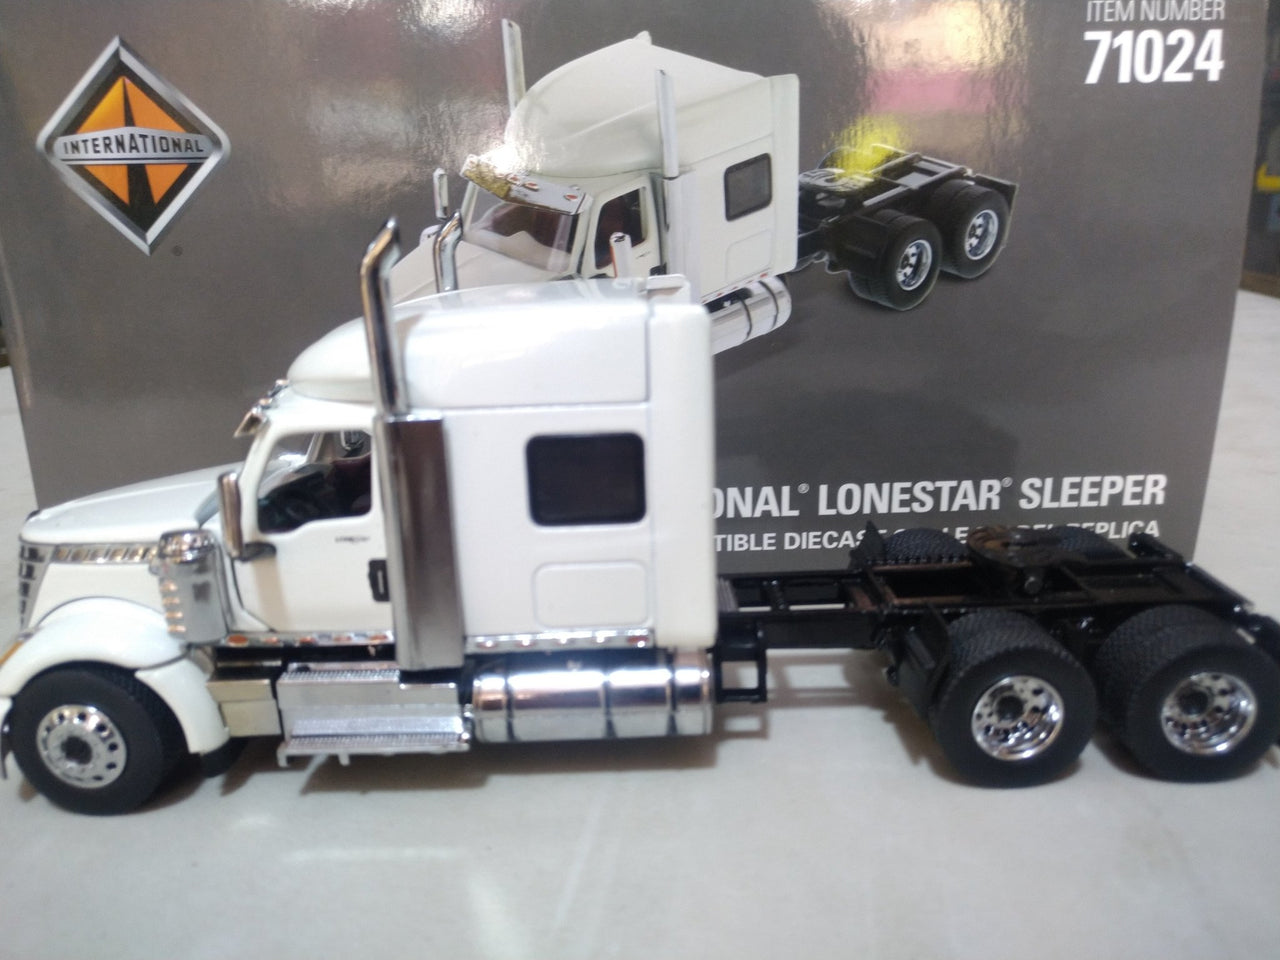 71024 Tracto Camión LoneStar Sleeper International Escala 1:50